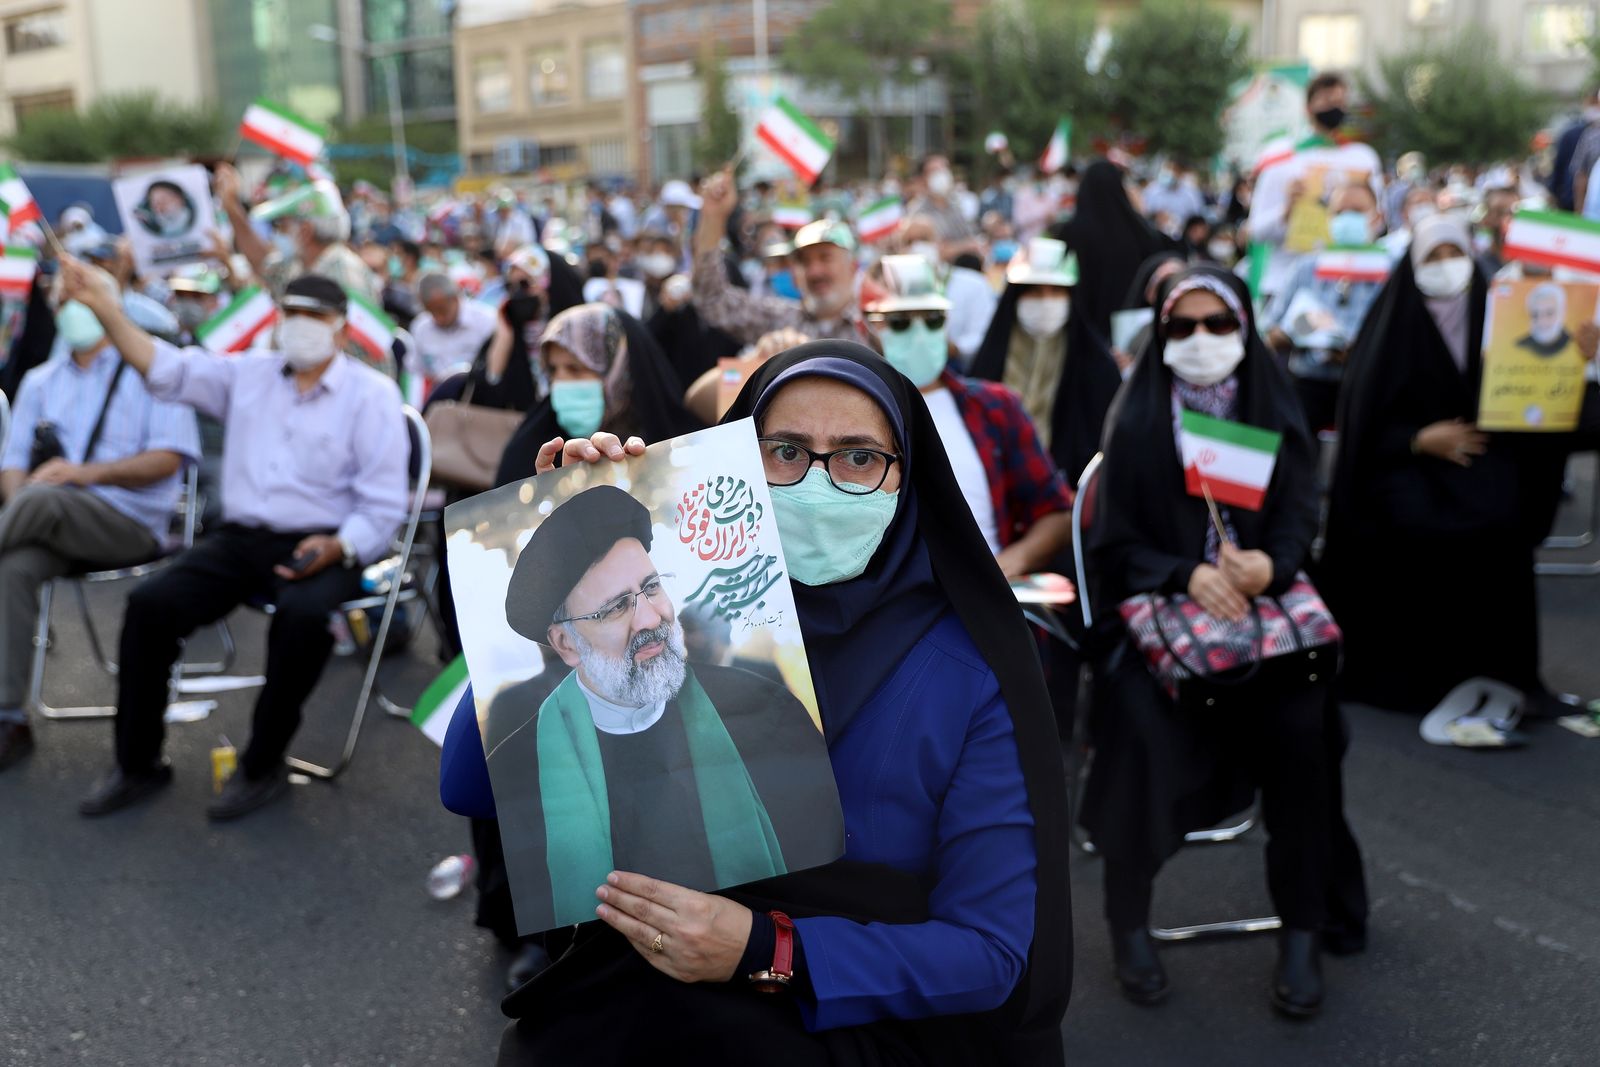 أنصار إبراهيم رئيسي يحملون ملصقات له خلال تجمع انتخابي في طهران - 16 يونيو 2021 - via REUTERS